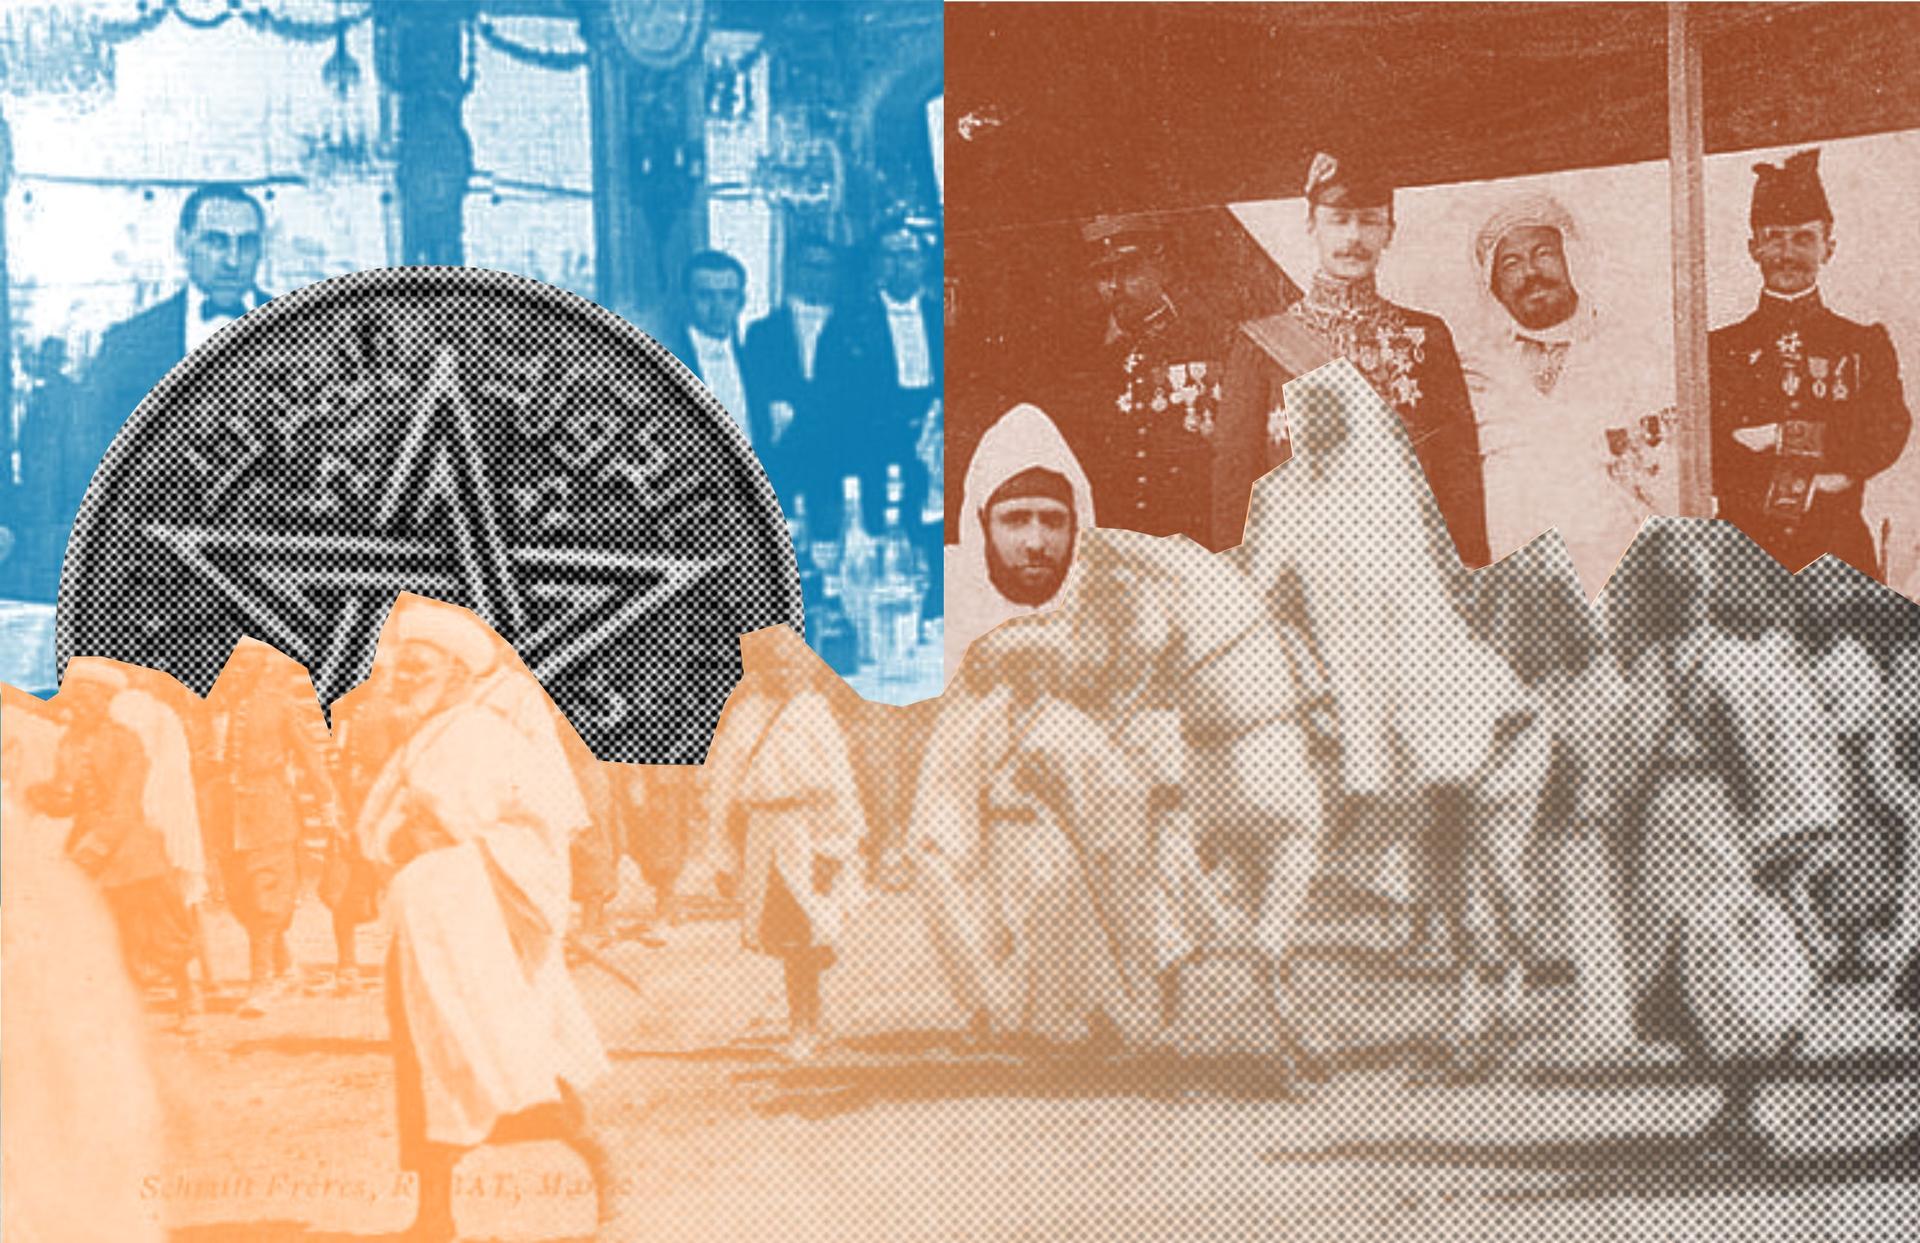  إعادة تشكيل البورجوازية المغربية: الحلقة الأولى